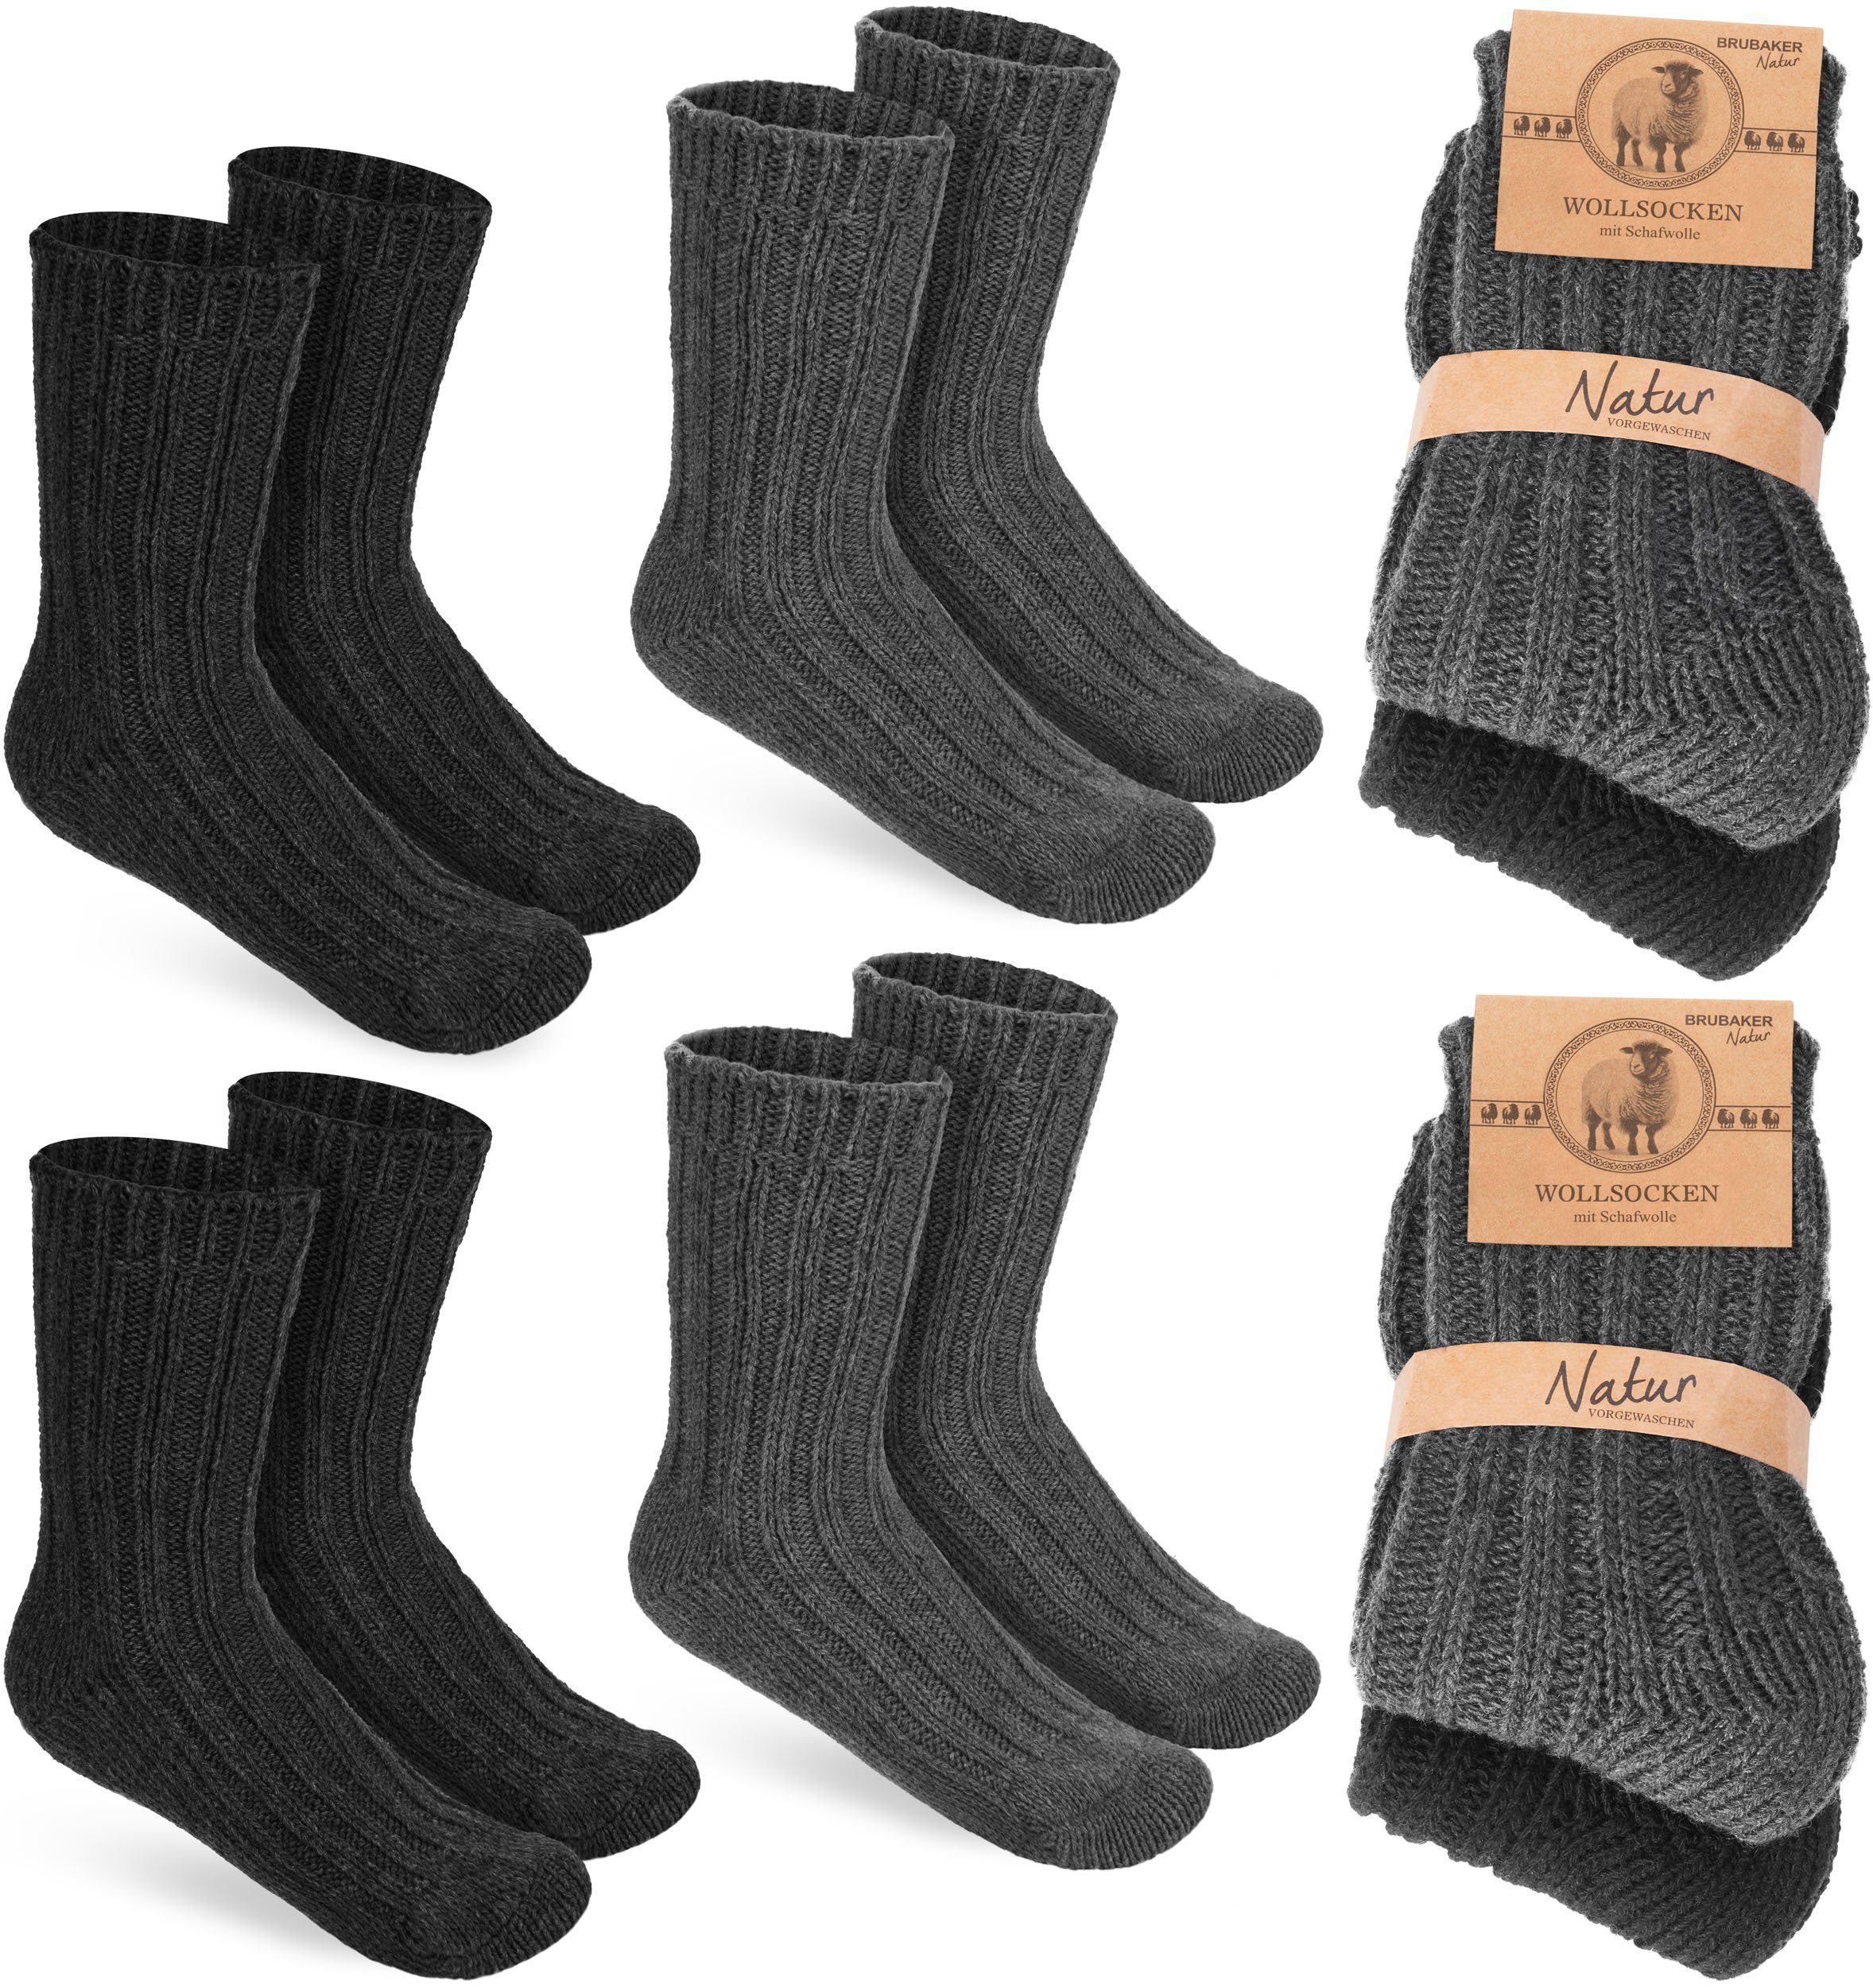 BRUBAKER Socken Kinder Wollsocken - Warme Wintersocken für Jungen und Mädchen (4-Paar, 4er-Pack) Flauschiges Socken Set mit Schafwolle - Winter Kindersocken Schwarz und Anthrazit